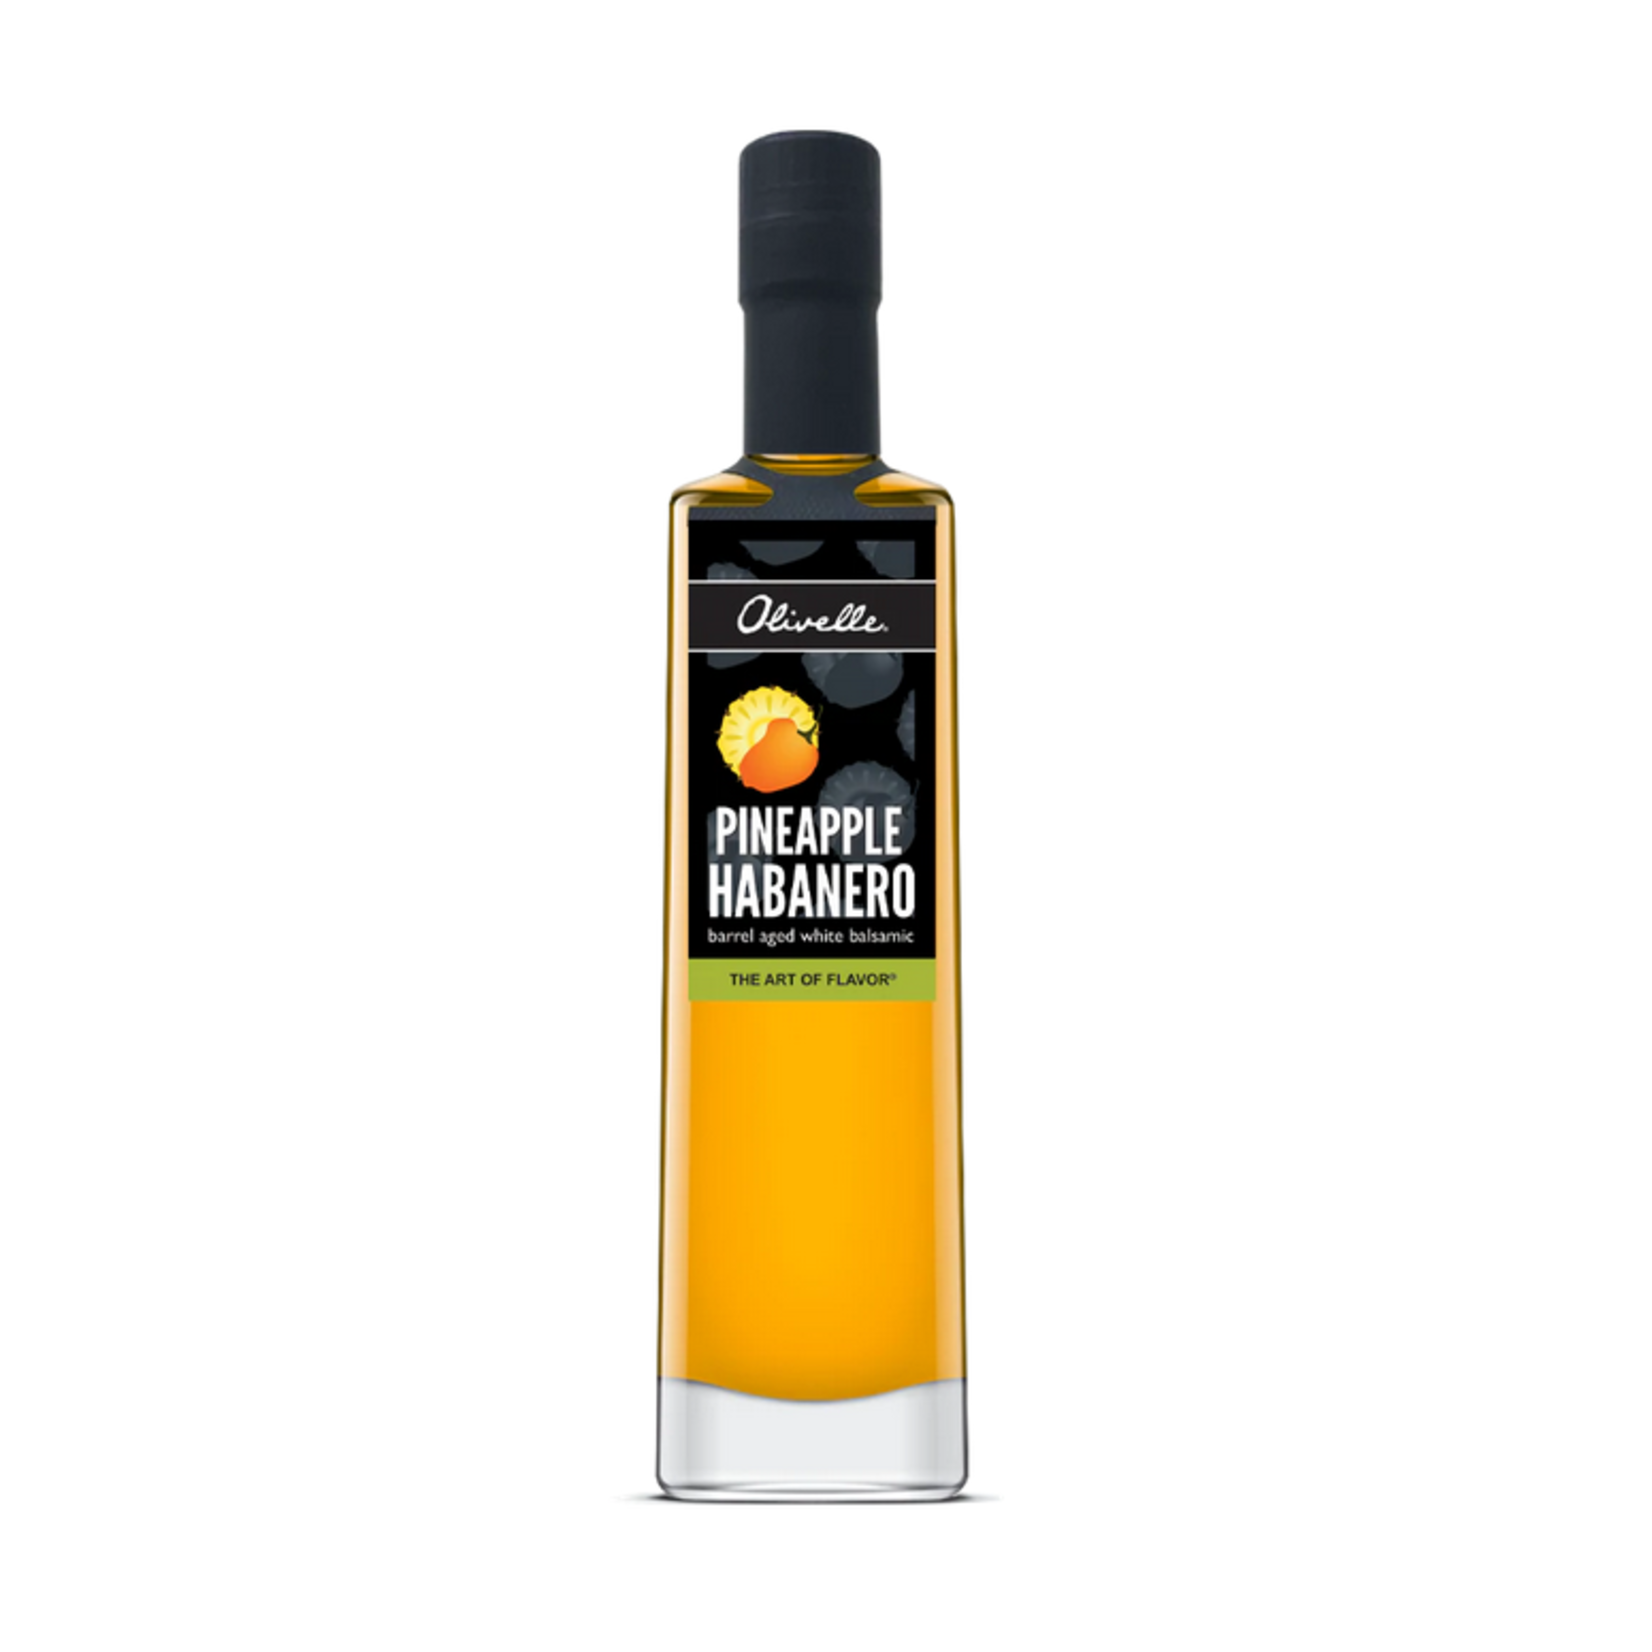 Olivelle Pineapple Habanero Balsamic Vinegar